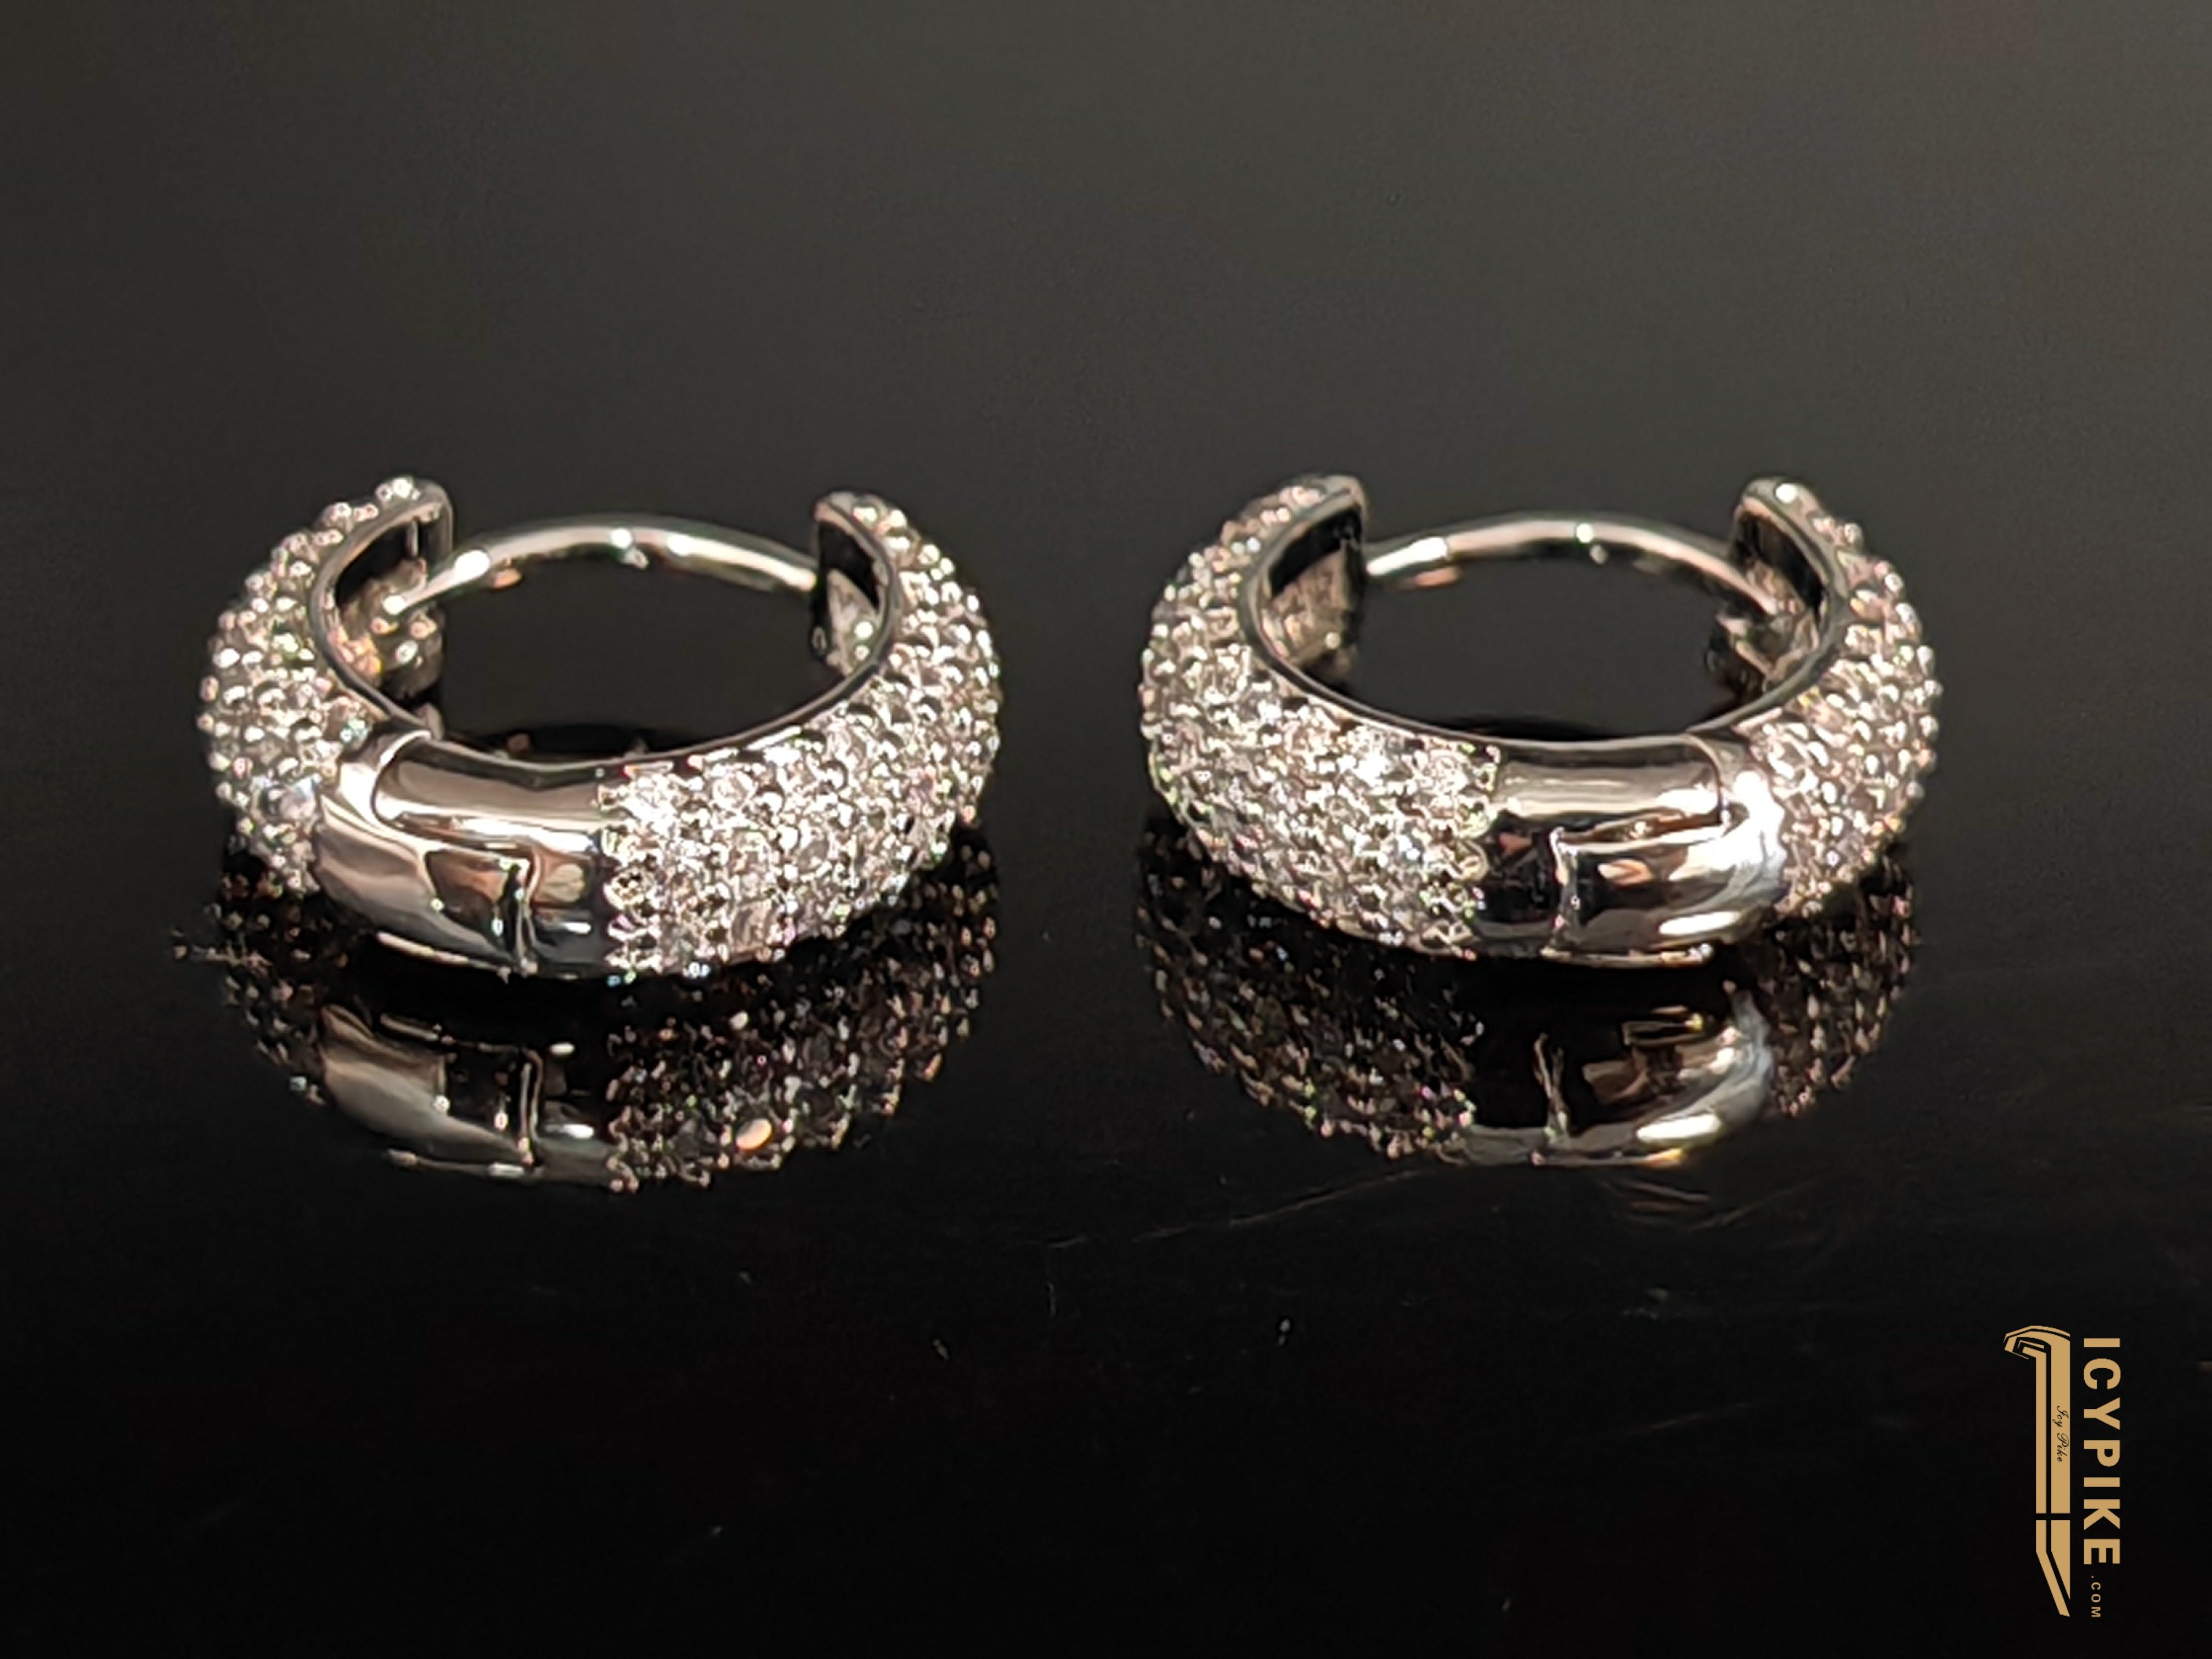 ICYPIKE 18K Gold Plated Loop Earrings - {{ cuban link}} Earrings